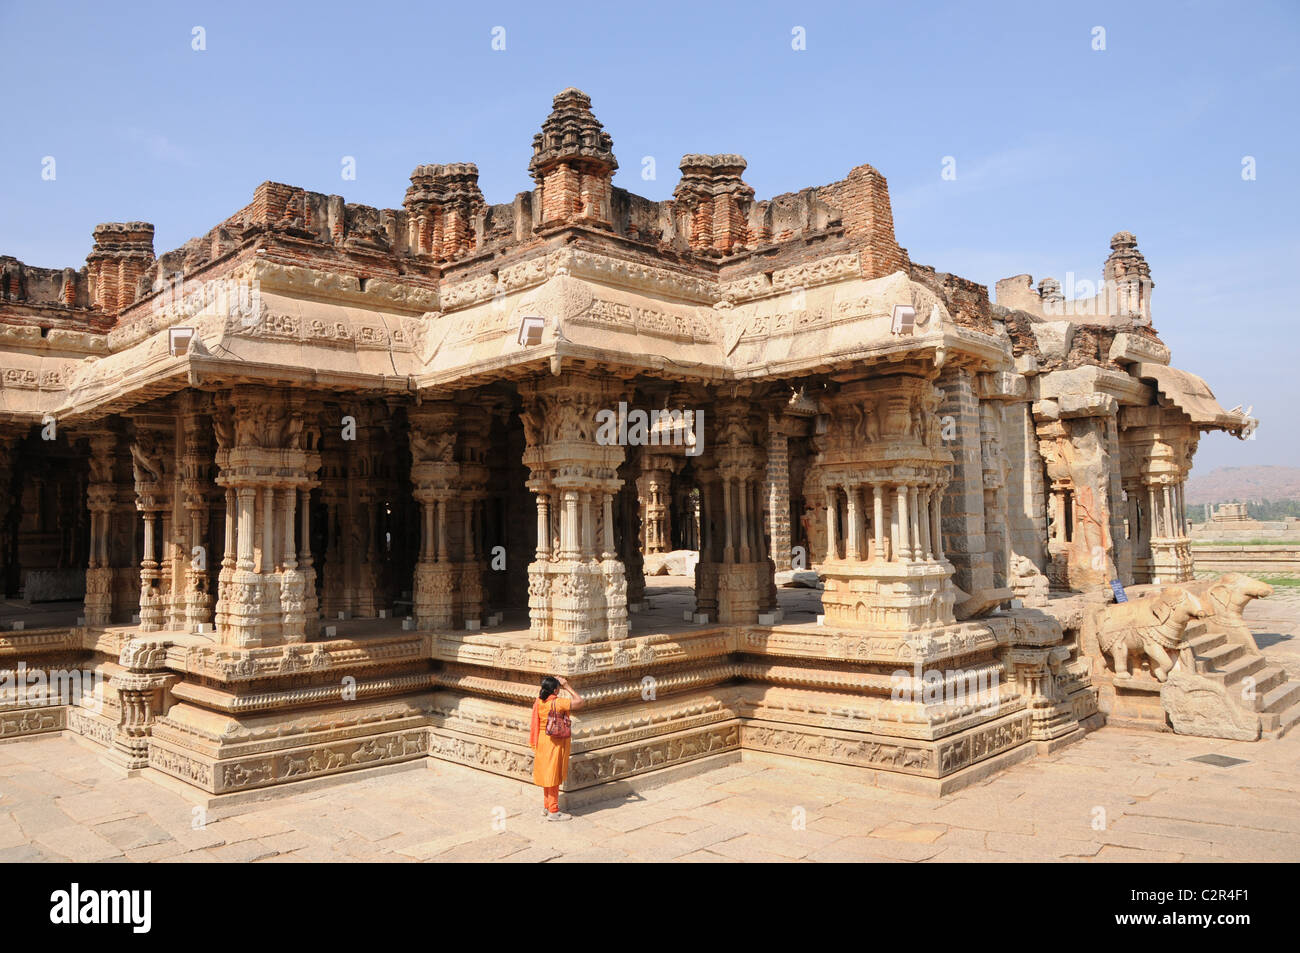 Vittala temple, un monument du patrimoine mondial Banque D'Images